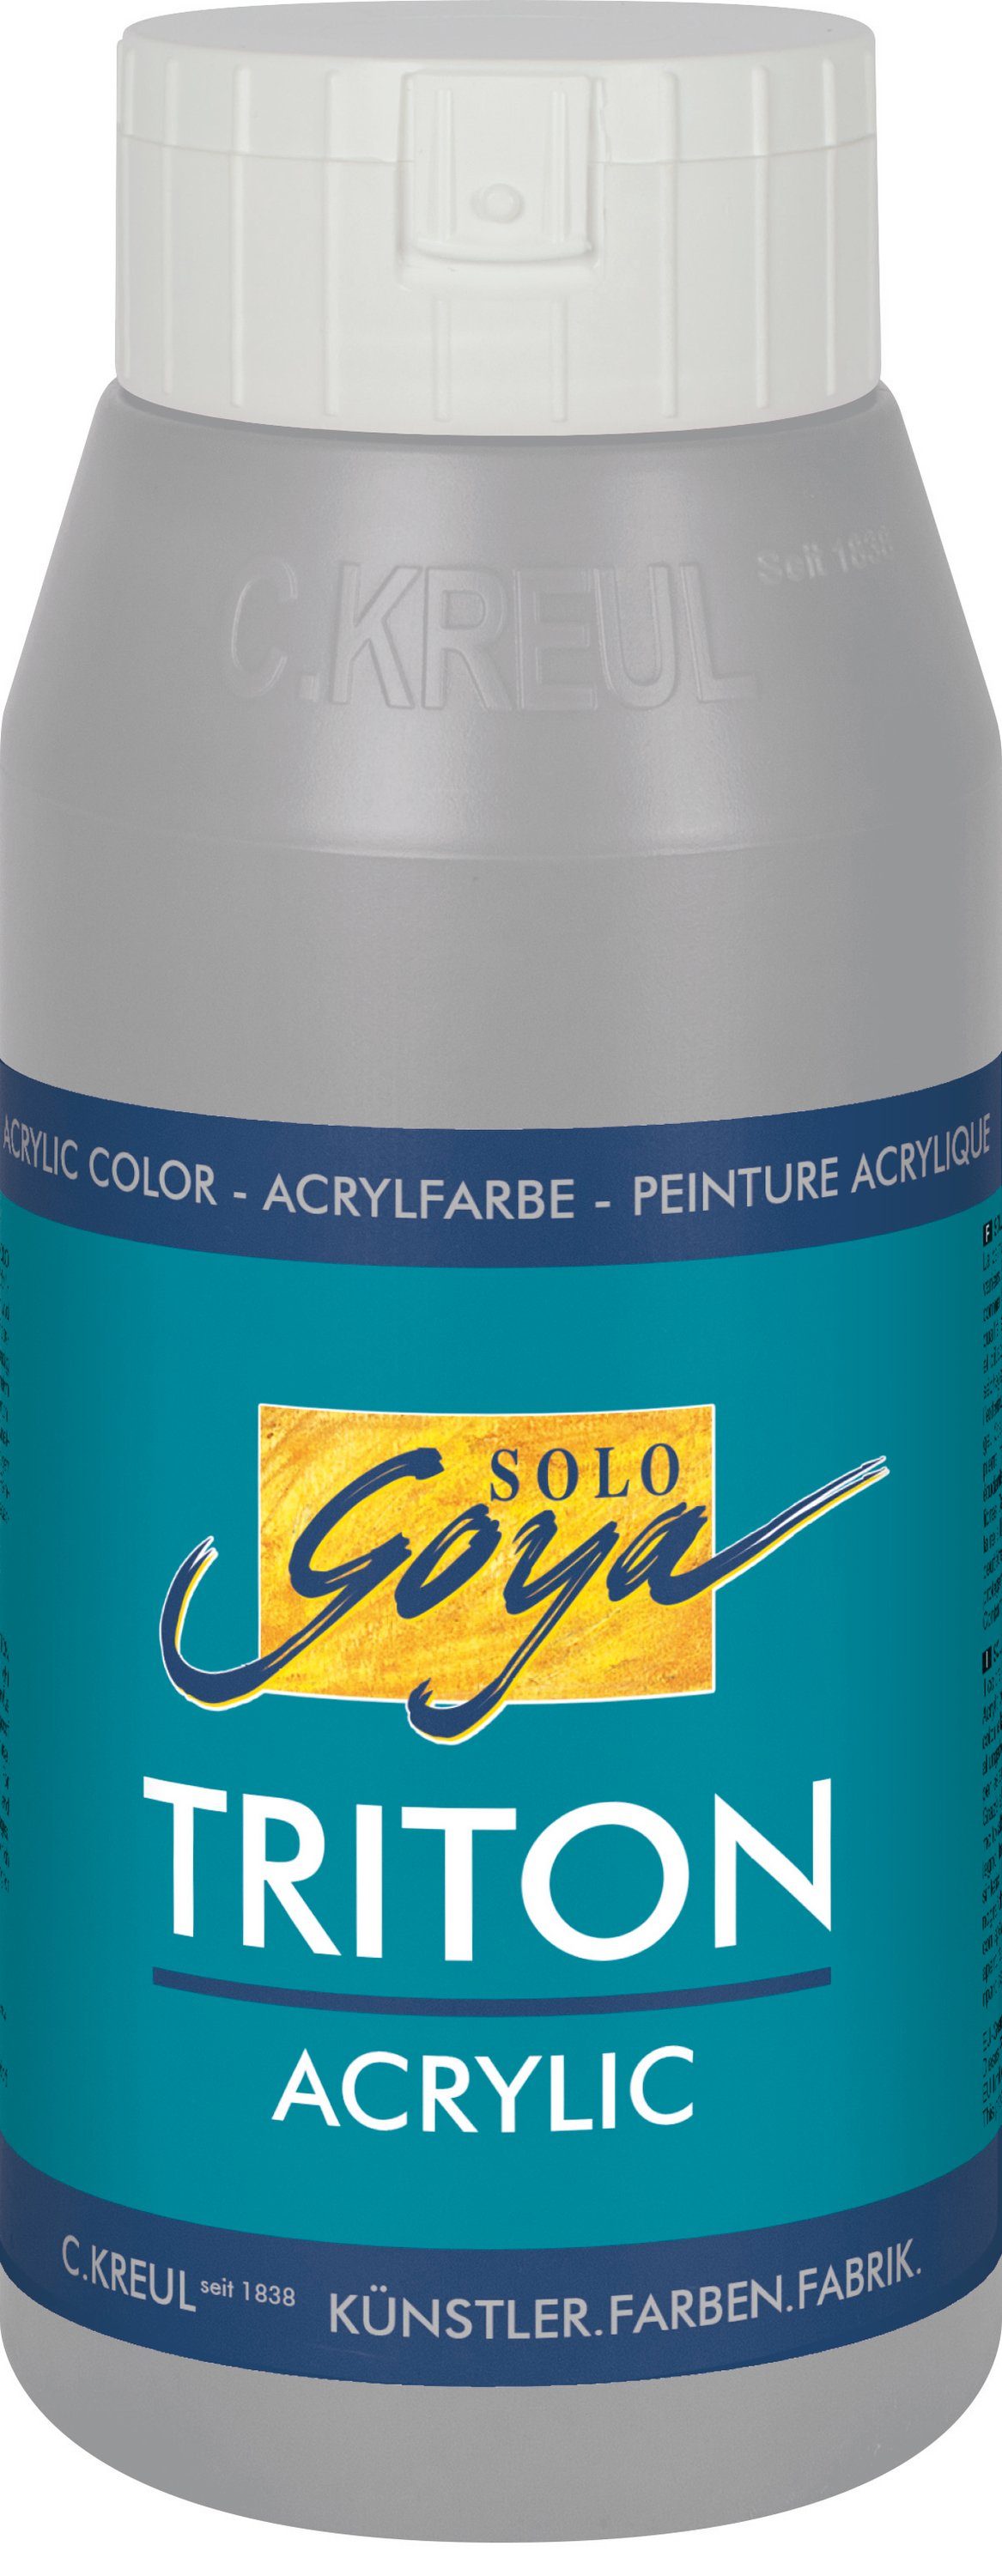 Goya Kreul Triton Acrylic, ml Solo Acrylfarbe Neutralgrau 750